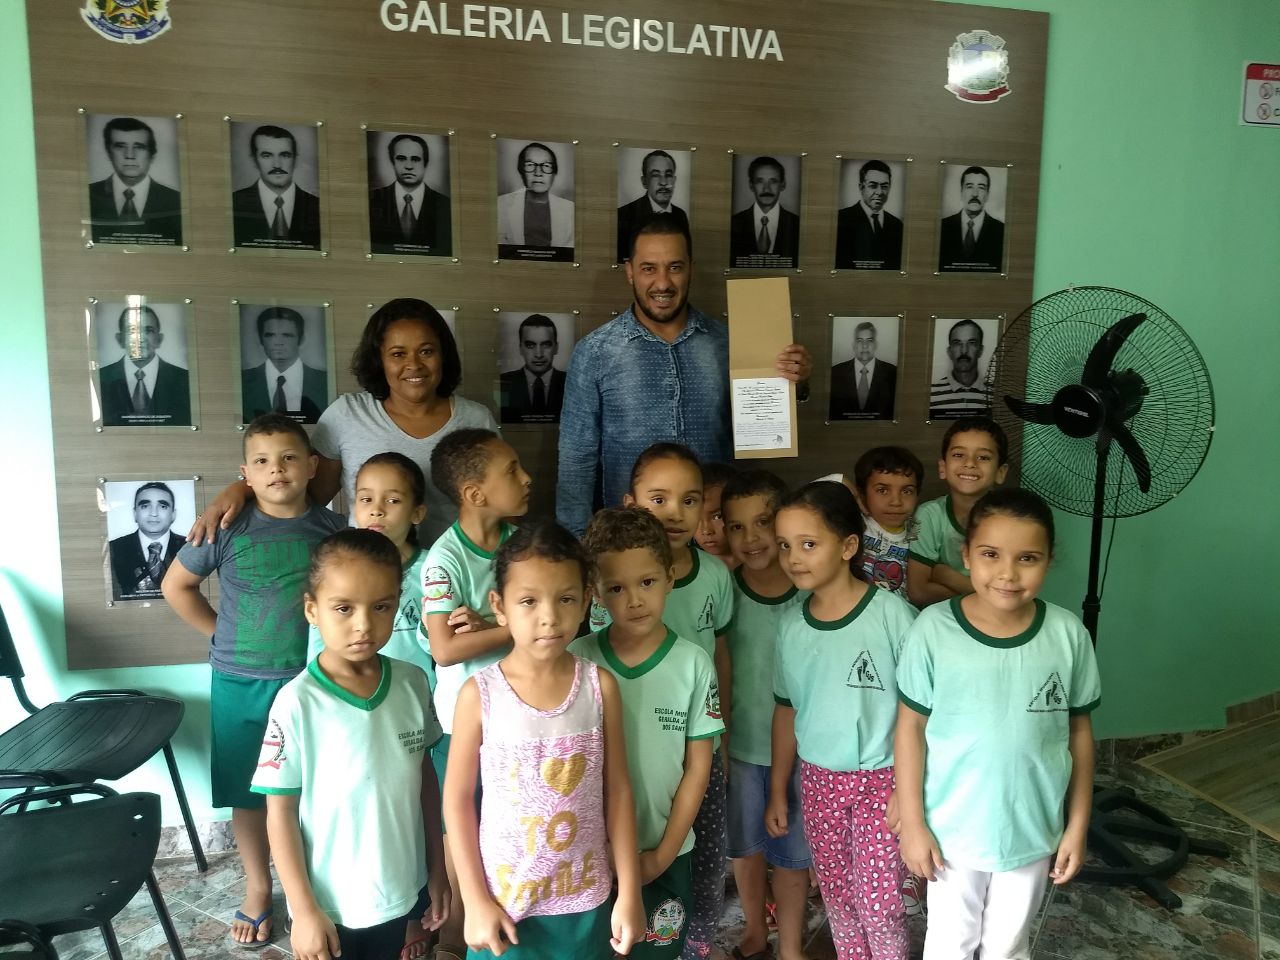 Presidente da Câmara Municipal de Santana do Riacho, recebeu a visita dos alunos da Escola Municipal Geralda Jorge dos Santos. 